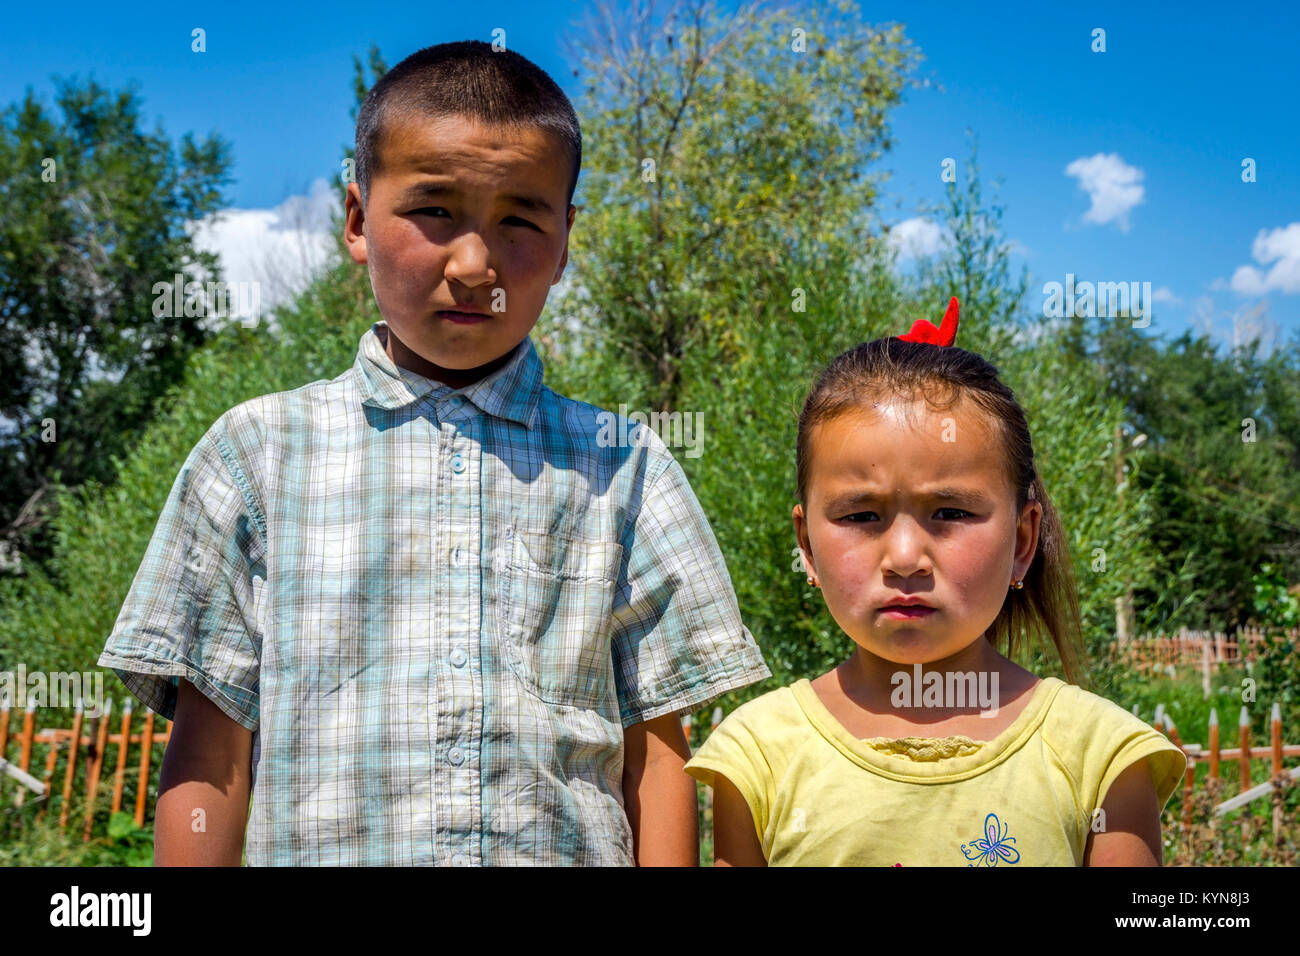 UGUT, KIRGHIZISTAN - Le 16 août : frères et Sœurs, un frère et une soeur qui posent avec de sérieux de l'expression du visage. Ugut est un village isolé au Kirghizistan. Août 201 Banque D'Images